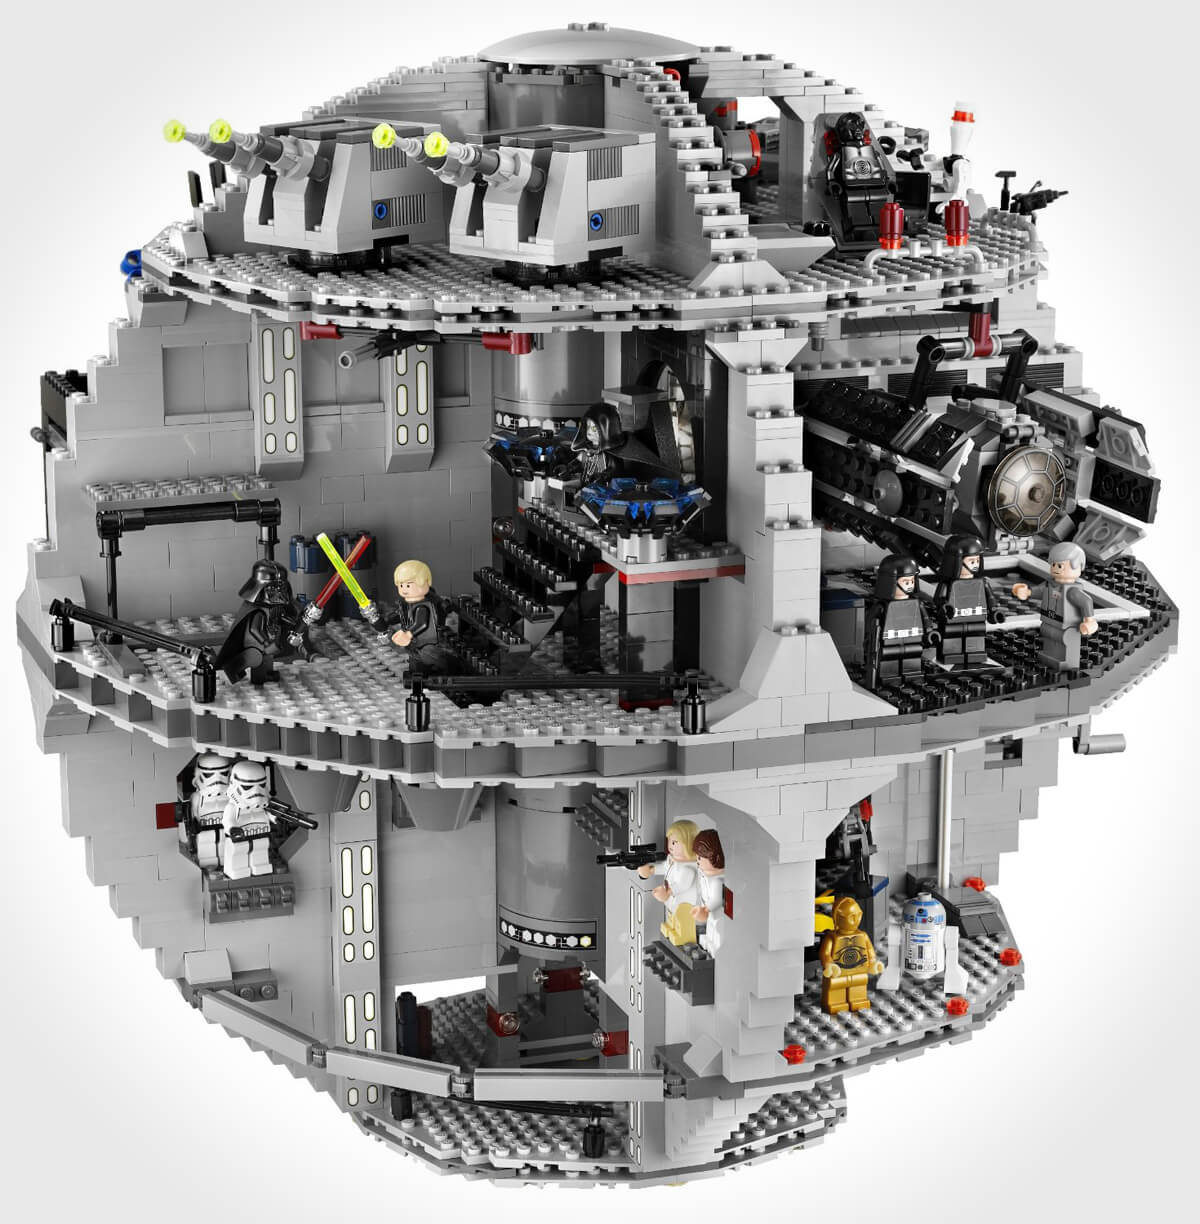 Lego Star Wars Death Star 10188 interior view